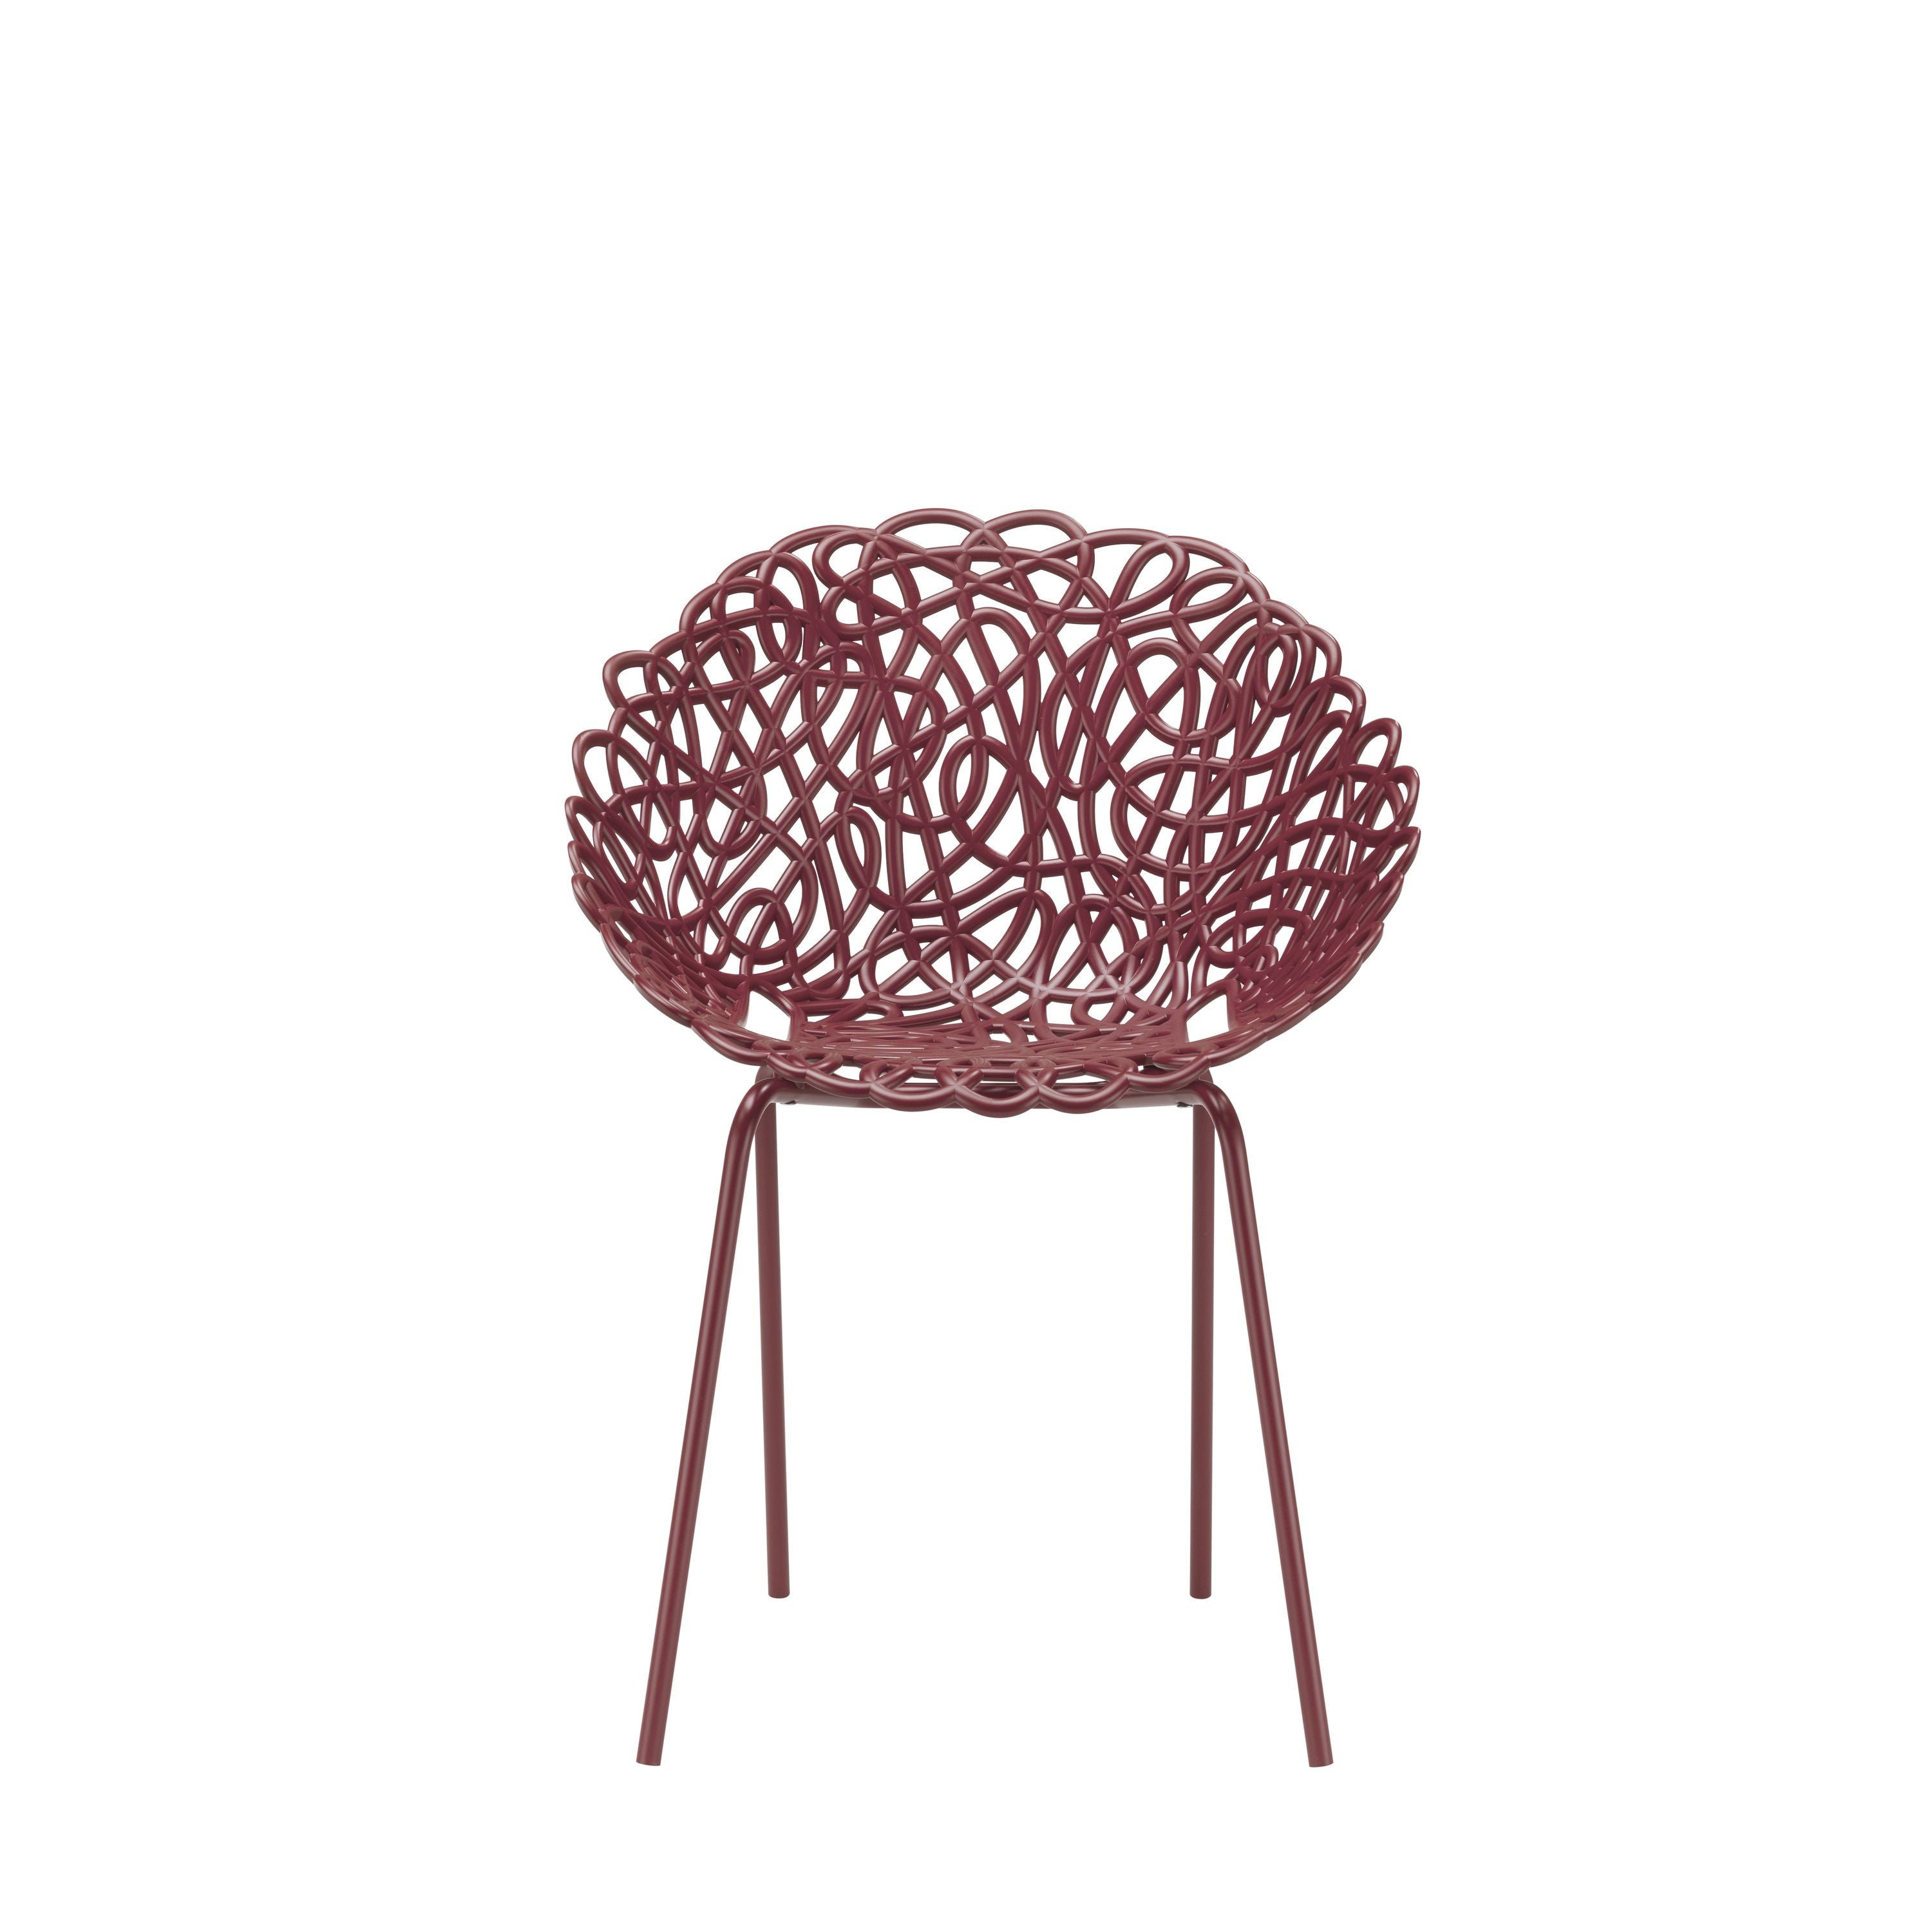 Qeeboo Bacana Chair Indoor Set Of 2 Pcs, Dark Red